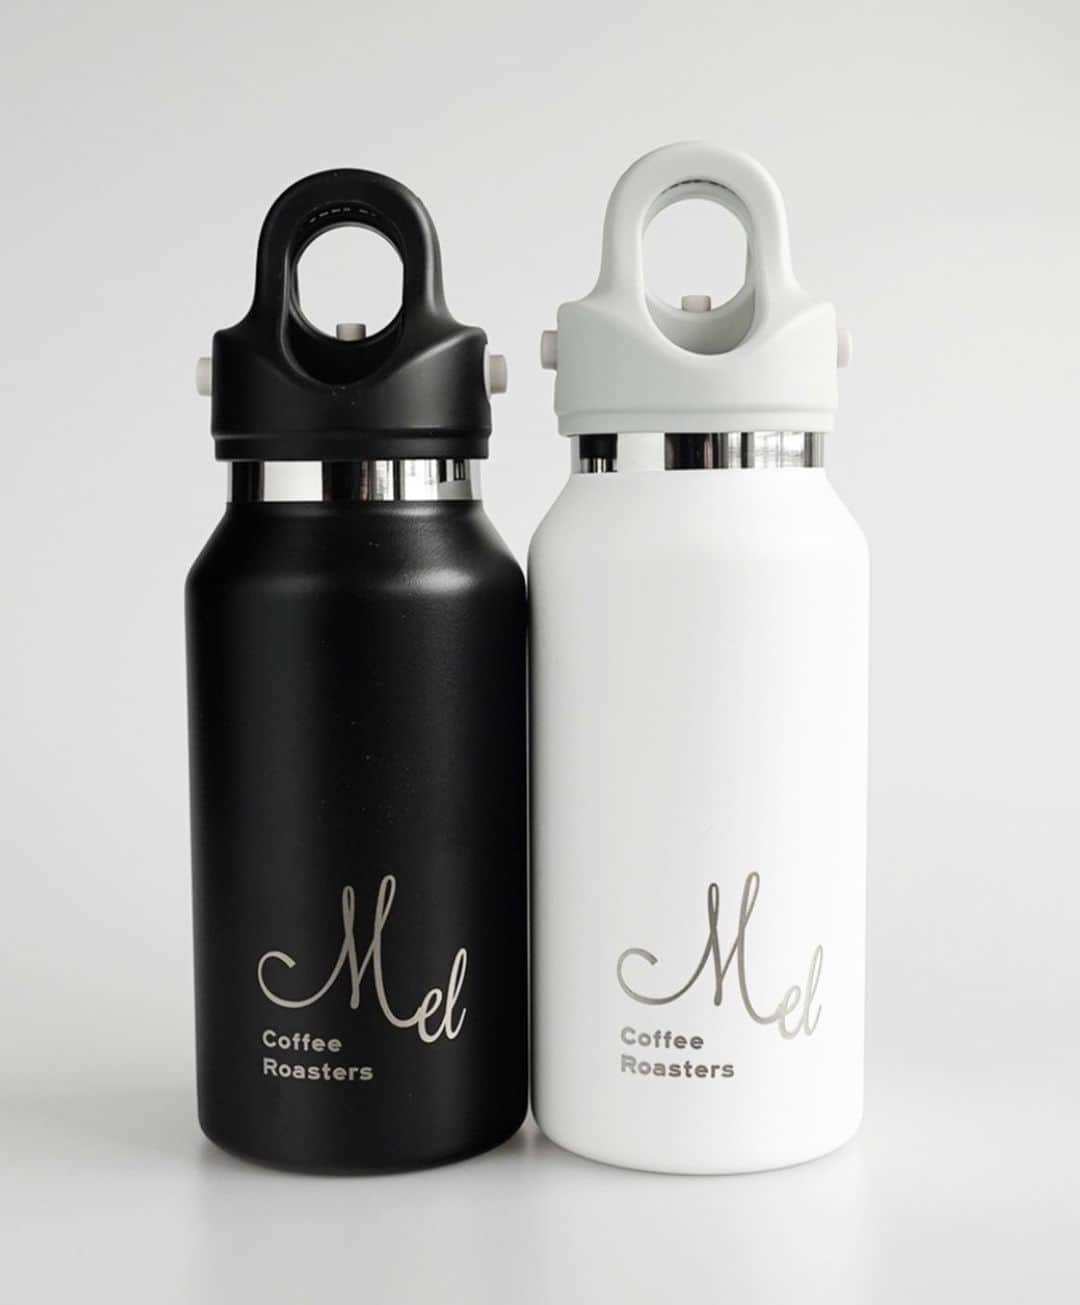 Mel Coffeeのインスタグラム：「Mel Coffee Roasters オリジナルボトル。 5/26 〜予約販売開始。  コンパクトな軽量タイプ。仕事や外出する時のお供に、コーヒーや晩酌用の持ち帰りにも。デイリーユースに最適なサイズ感です。ビールは350ml缶まるまる一本分、コーヒーはトールサイズが入ります。  RevoMax Innovationsは、元インテル社のエンジニアであったレオ・シャオ氏が、身近な製品をクリエイティブに再設計し、社会にイノベーションをもたらすことを使命として2015年に創立されました。RevoMaxのブランド名はRevolutionary (革新的な) + Maximize (最大化)を意味しており、革新的な発明を通して人々の利便性を最大限に高める、というメッセージが込められています。従来のネジ込み式のキャップは、開け閉めが面倒であるばかりか、きちんと閉まっていなければ漏れてしまいます。どうすればこの問題を解決できるのか、と真剣に考えた結果生まれたのがワンタッチ開閉式の独自キャップを搭載したRevoMaxです。RevoMaxは簡単・確実にキャップを開け閉めすることができます。また、長時間の保温保冷性能も業界トップクラスです。  ◆製品仕様 サイズ：直径 65／高さ 193(mm) 口　径：48(mm) 重　量：274g カラー：オニキスブラック 材　質：内びん／ステンレス鋼　胴部／ステンレス鋼（ポリエステル樹脂塗装※）キャップ／ポリプロピレン、パッキン／シリコン　※ギャラクシーシルバーを除く  たった一秒の快適さ 炭酸を入れられる秘密はフタにあり 片手で簡単に開閉できるユニークなキャップ。 ３つのボタンを同時にプッシュして瞬時にオープン、リングを引き上げ瞬時にロック。 片手で開けられるので子供でも簡単に開閉できる。  空気がないと、温度が一定！？ ステンレス２重構造、間が真空のため内部が温度変化しにくくなっています。さらに真空部分を銅でコーティングすることで熱の出入りをシャットアウト。  お手入れ簡単、衛生的 REVOMAXのキャップセットは「リング」「キャップ」「パッキン」の３パーツに分解でき、丸ごと洗えて衛生的。 キャップセットは食洗器で洗浄可能です。ボトル本体は食洗器は使用できません。  -REVOMAXのひみつ-  304ステンレス 耐蝕性、耐熱性、耐衝撃性に優れ、食器にも使われているステンレスです。飲料を美味しく保ち、お手入れも簡単。乳幼児や高齢者にも安全にご使用いただけます。  口径4.4cm、 飲み口の程よい厚み 氷も茶殻も詰まることのない口広タイプで、洗浄スポンジ　もすっぽり。奥までしっかり洗えます。  銅コーティング ステンレス真空部分に念入りに銅コーティングが施されているため、熱の出入りをシャットアウト。  真空断熱構造 ステンレスが二重構造で、その間が真空のため内部の放熱を抑え、外気温の影響を受けにくい構造。  表面は パウダーコーティング ボトル表面は指紋がつきにくく、結露せず濡れた手でも滑りにくいパウダーコーティングが施されています。  #melcoffeeroasters #メルコーヒーロースターズ #bottle #takeout #takeaway #togo」